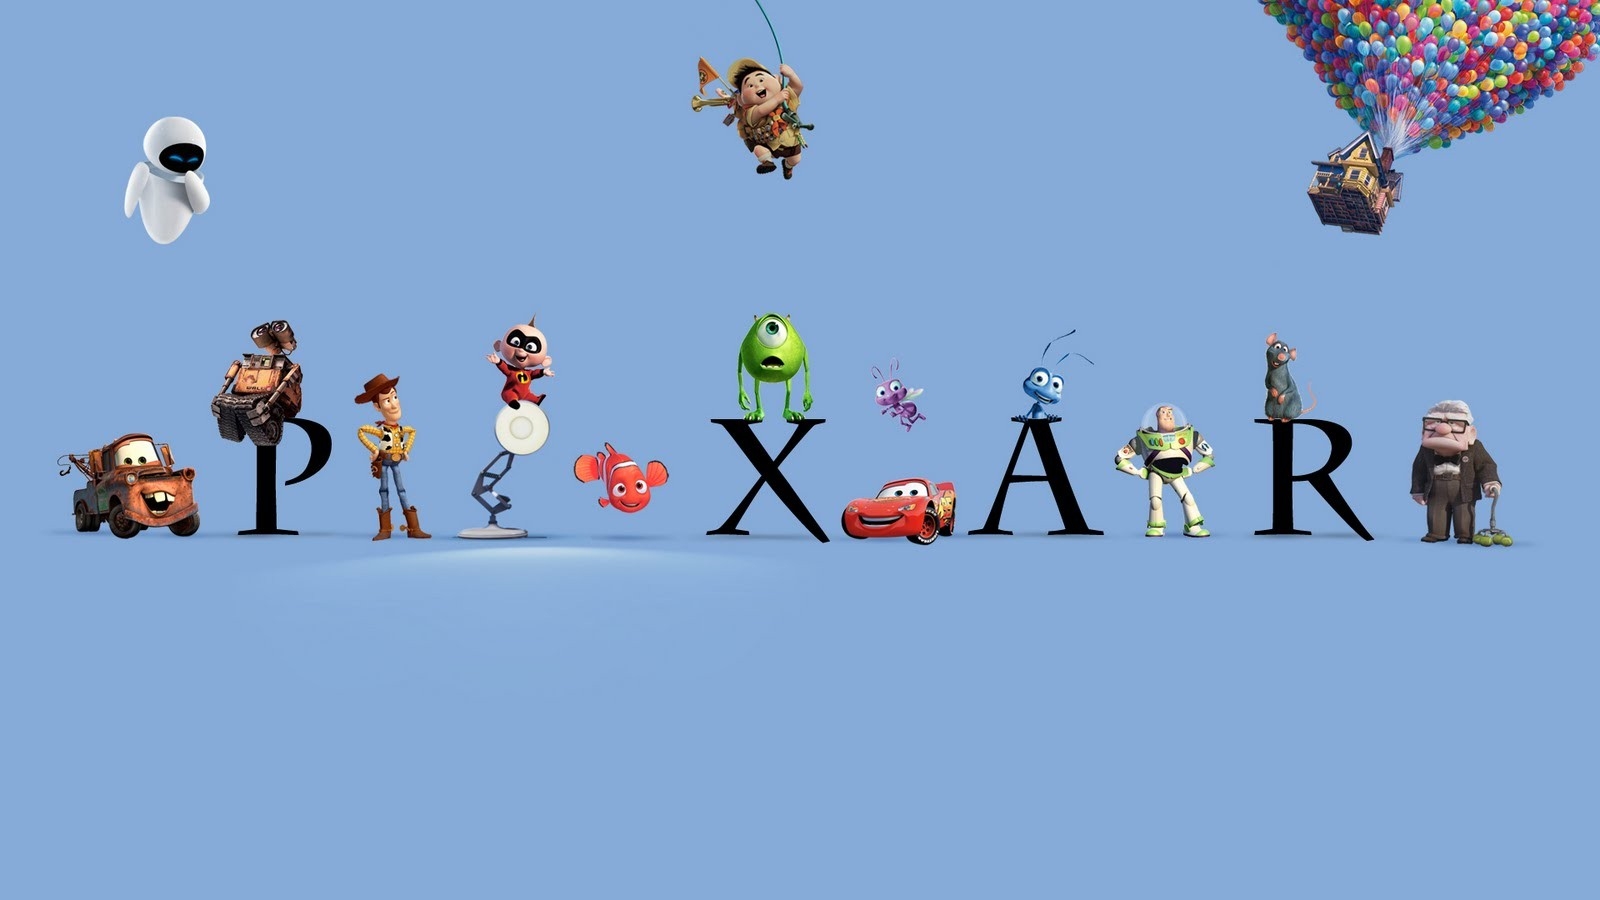 disney pixar wallpaper,bird,organism,adaptation,illustration,animation